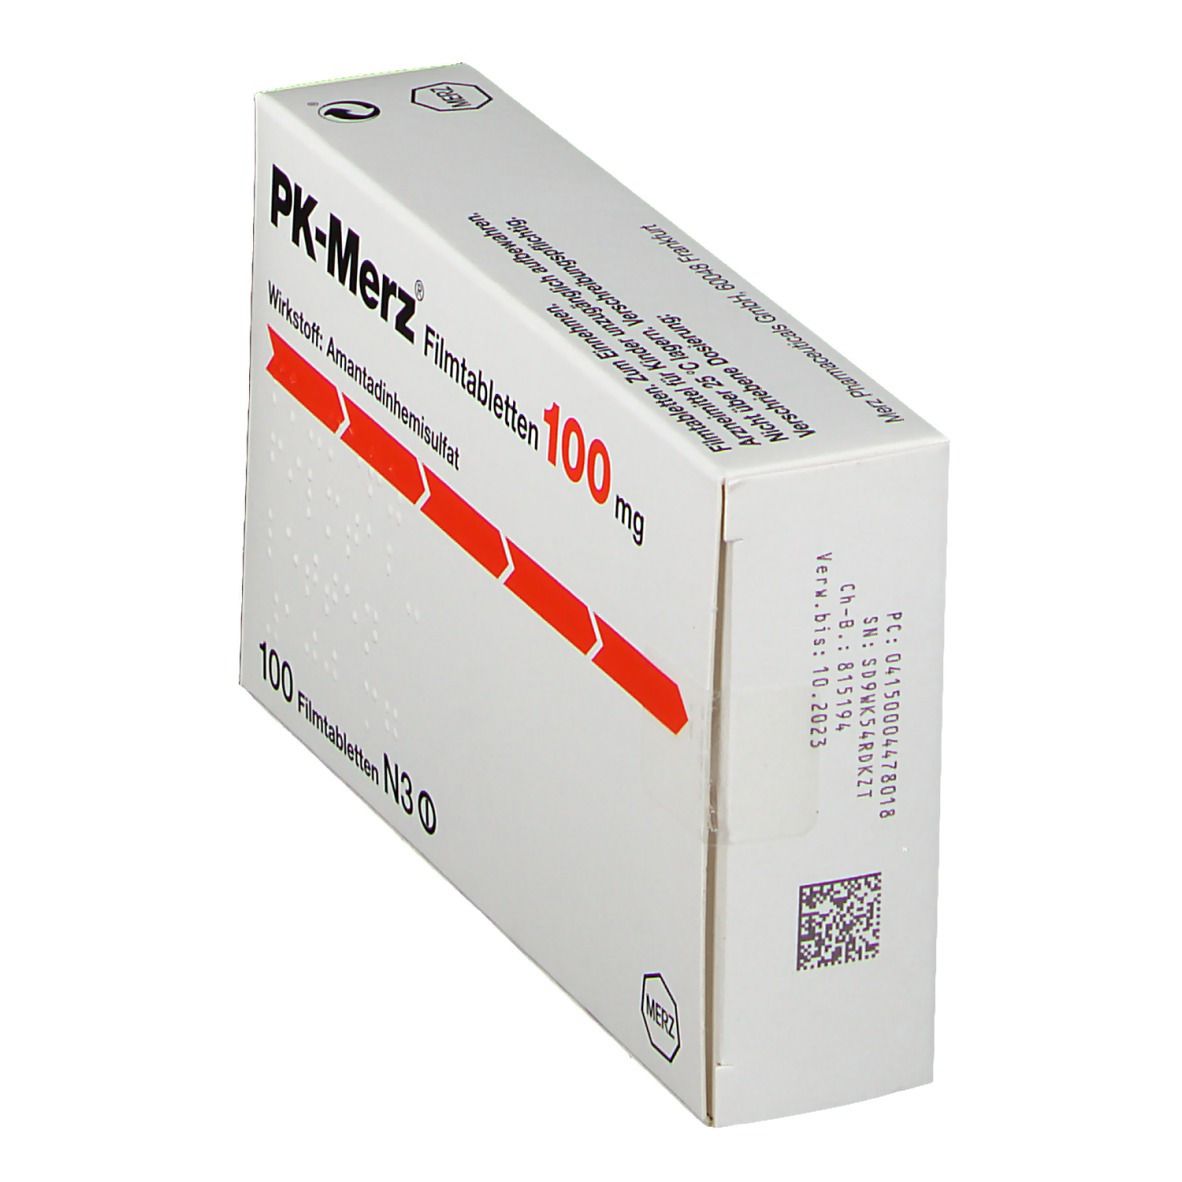 PK-Merz® 100 mg